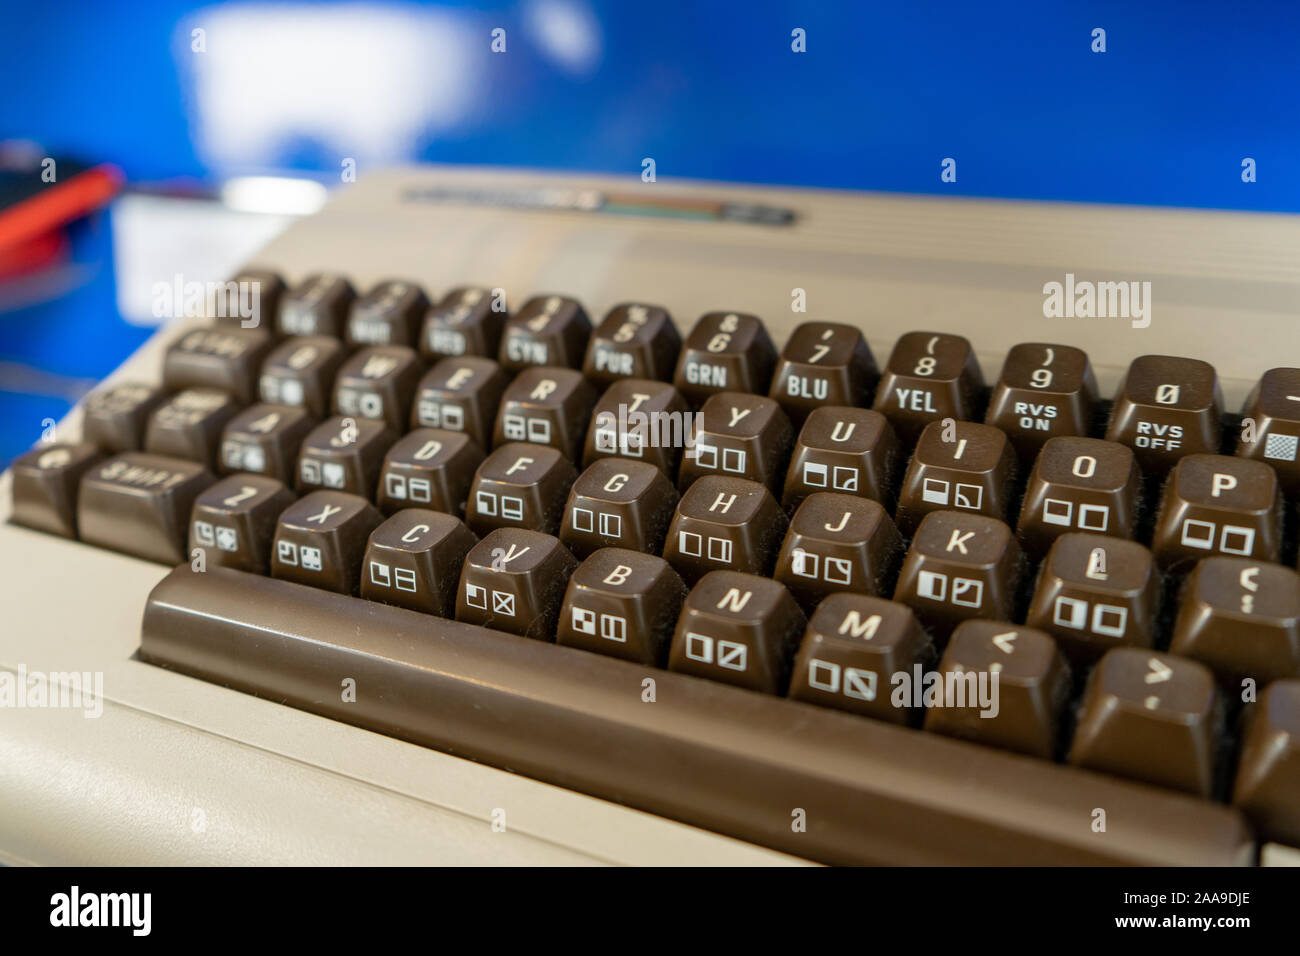 Eine Nahaufnahme von der Tastatur auf einem Commodore 64 Computer aus den 80er Jahren Stockfoto